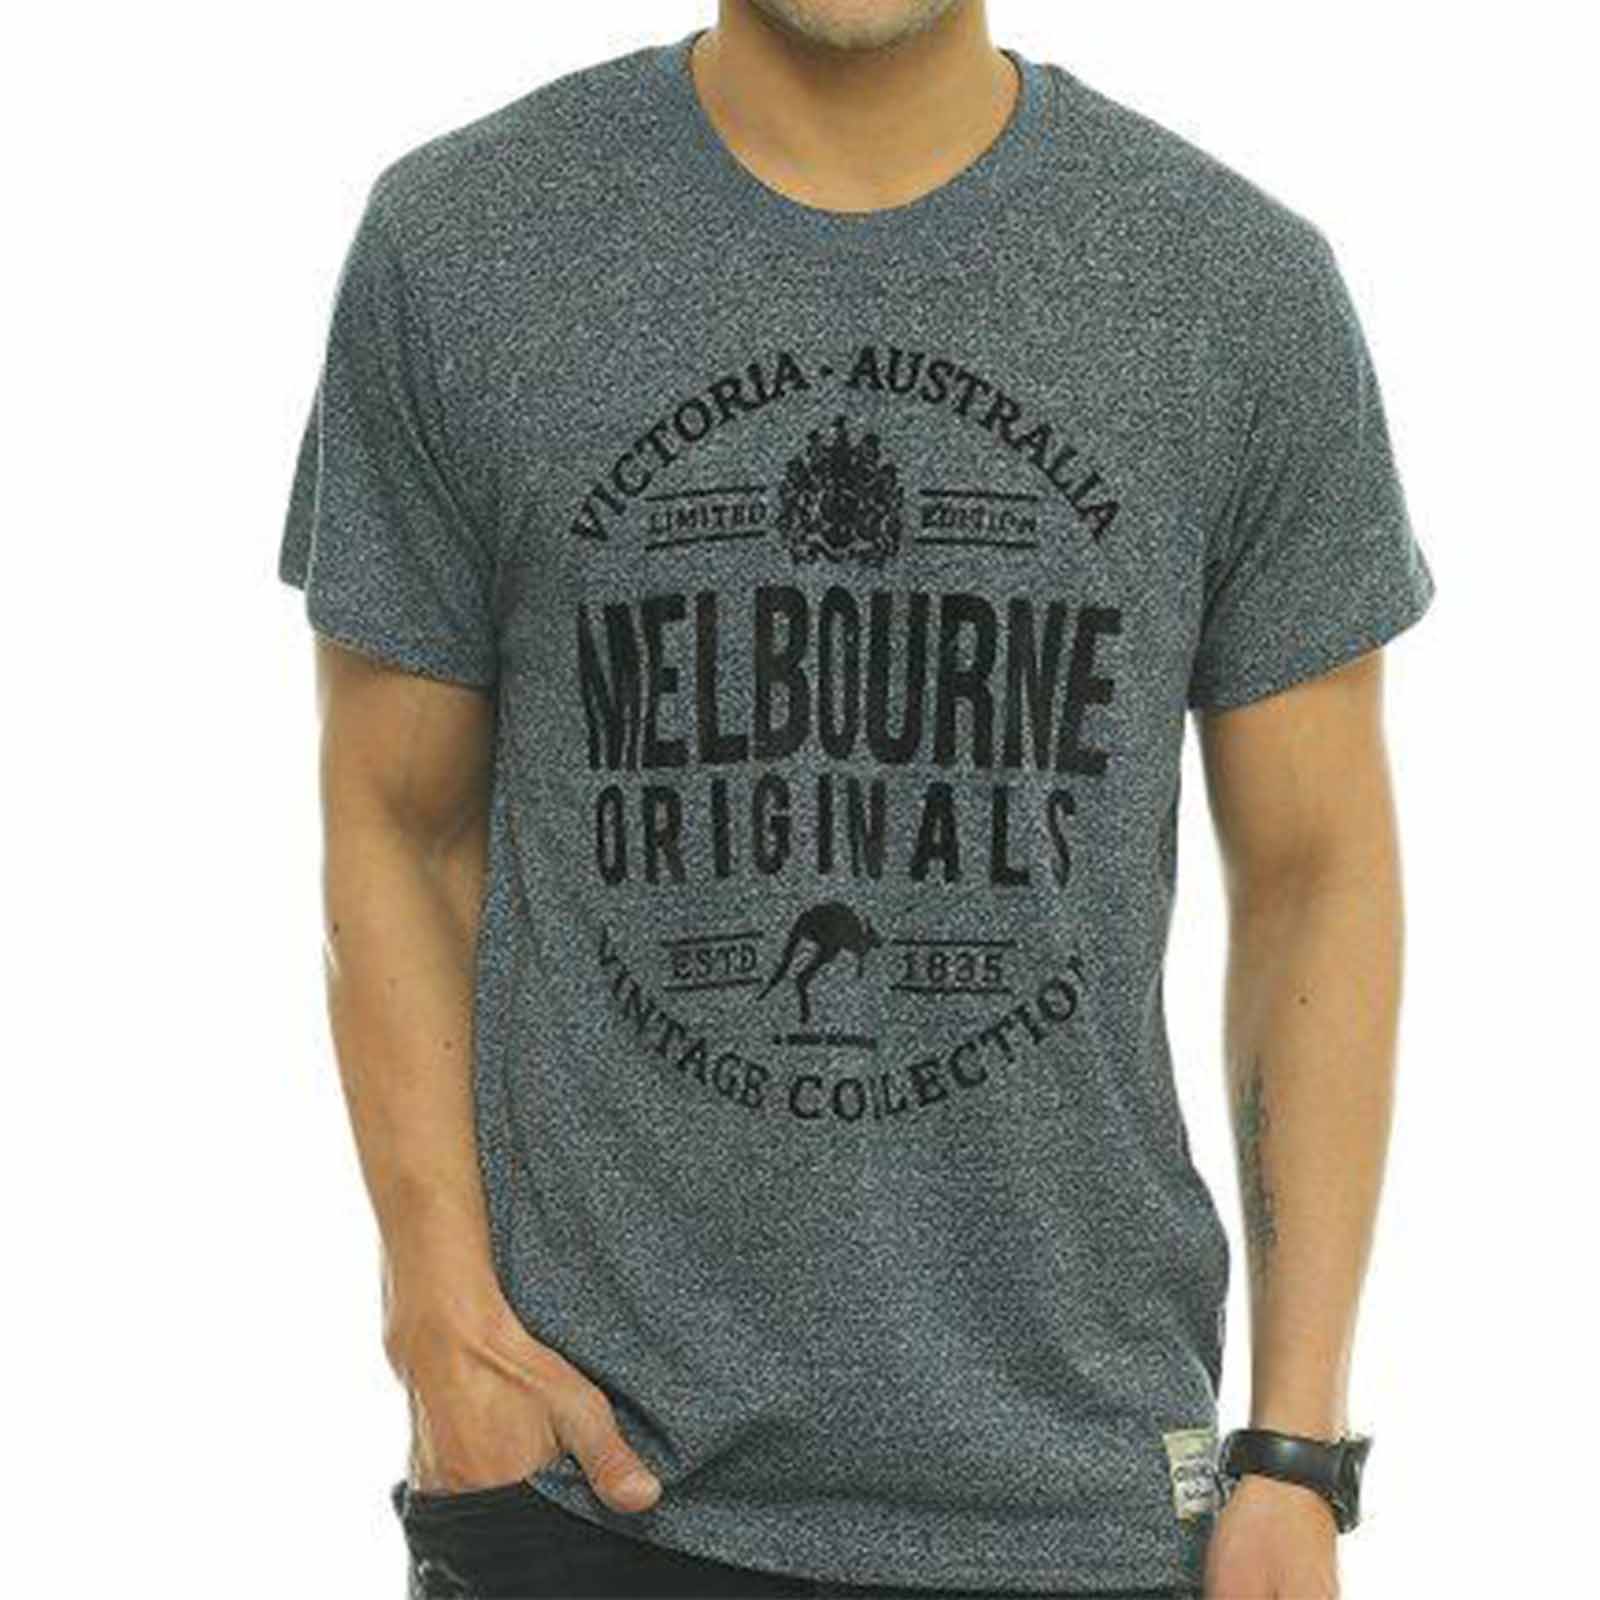 Melbourne Originals T-shirt